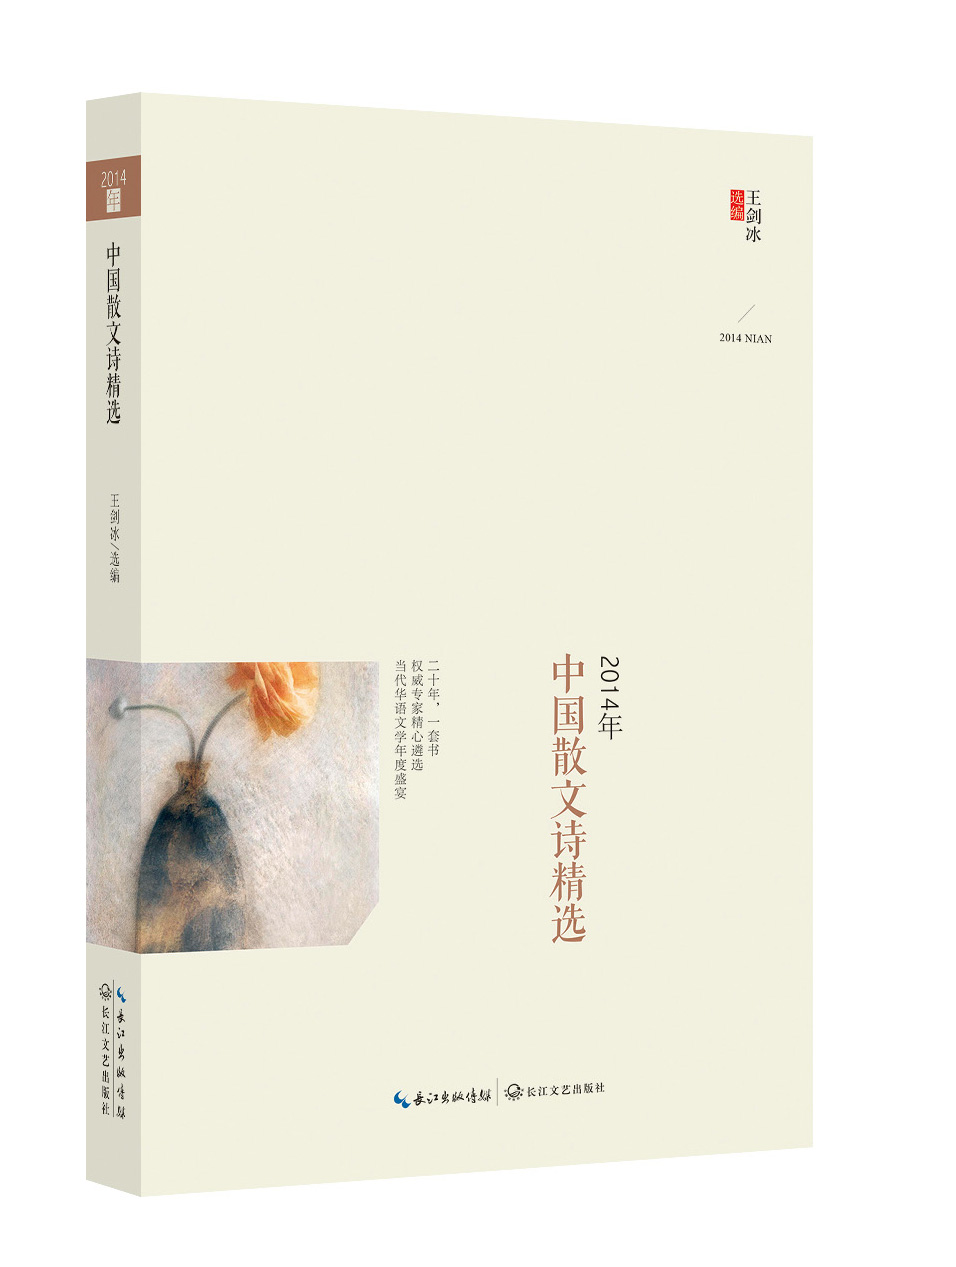 2014年中国散文诗精选